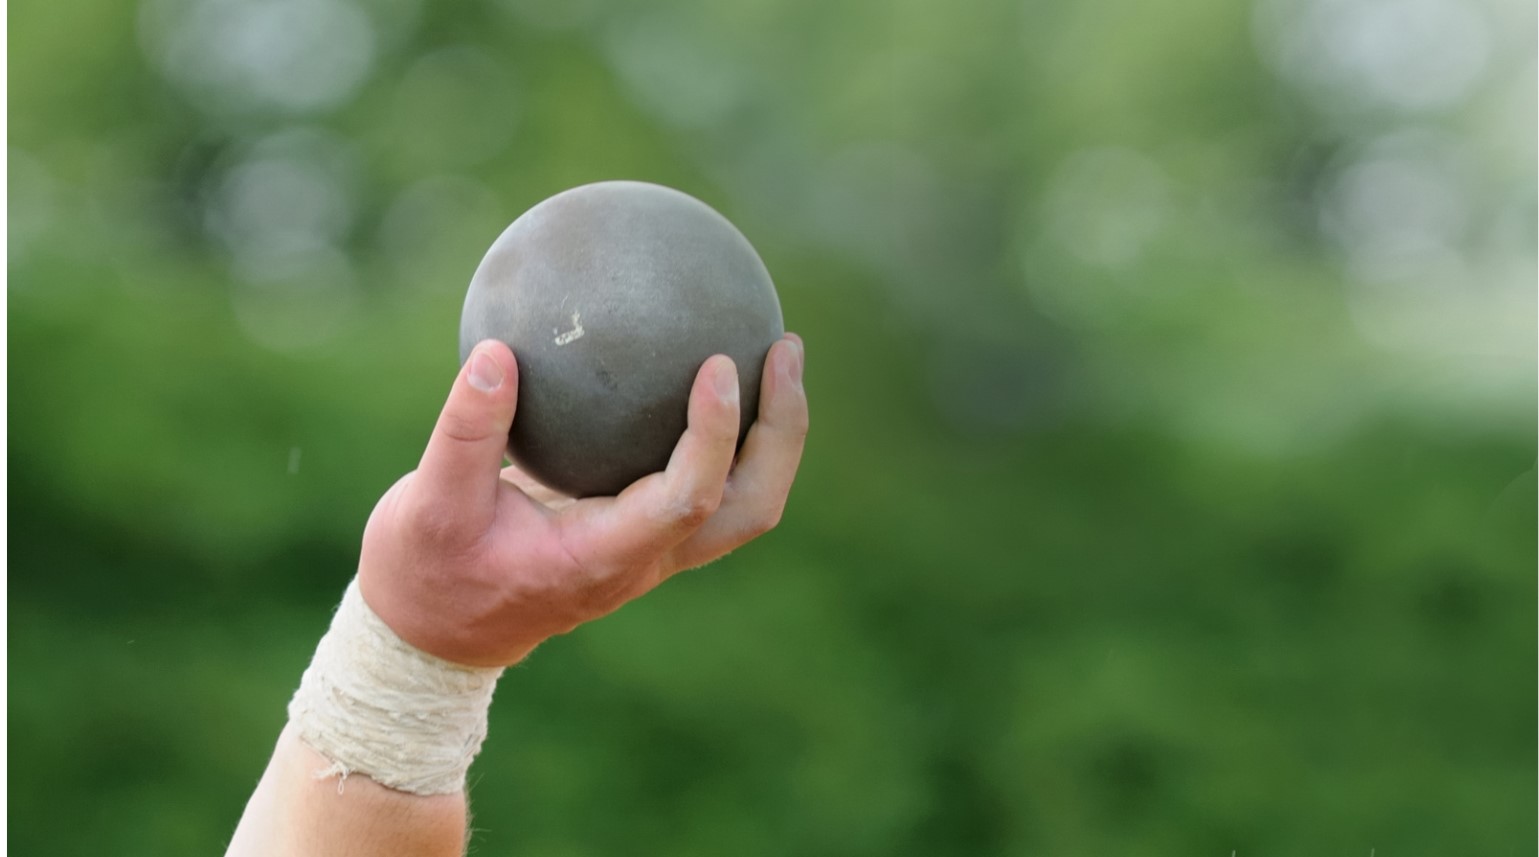 A proper shot spherical ball. 